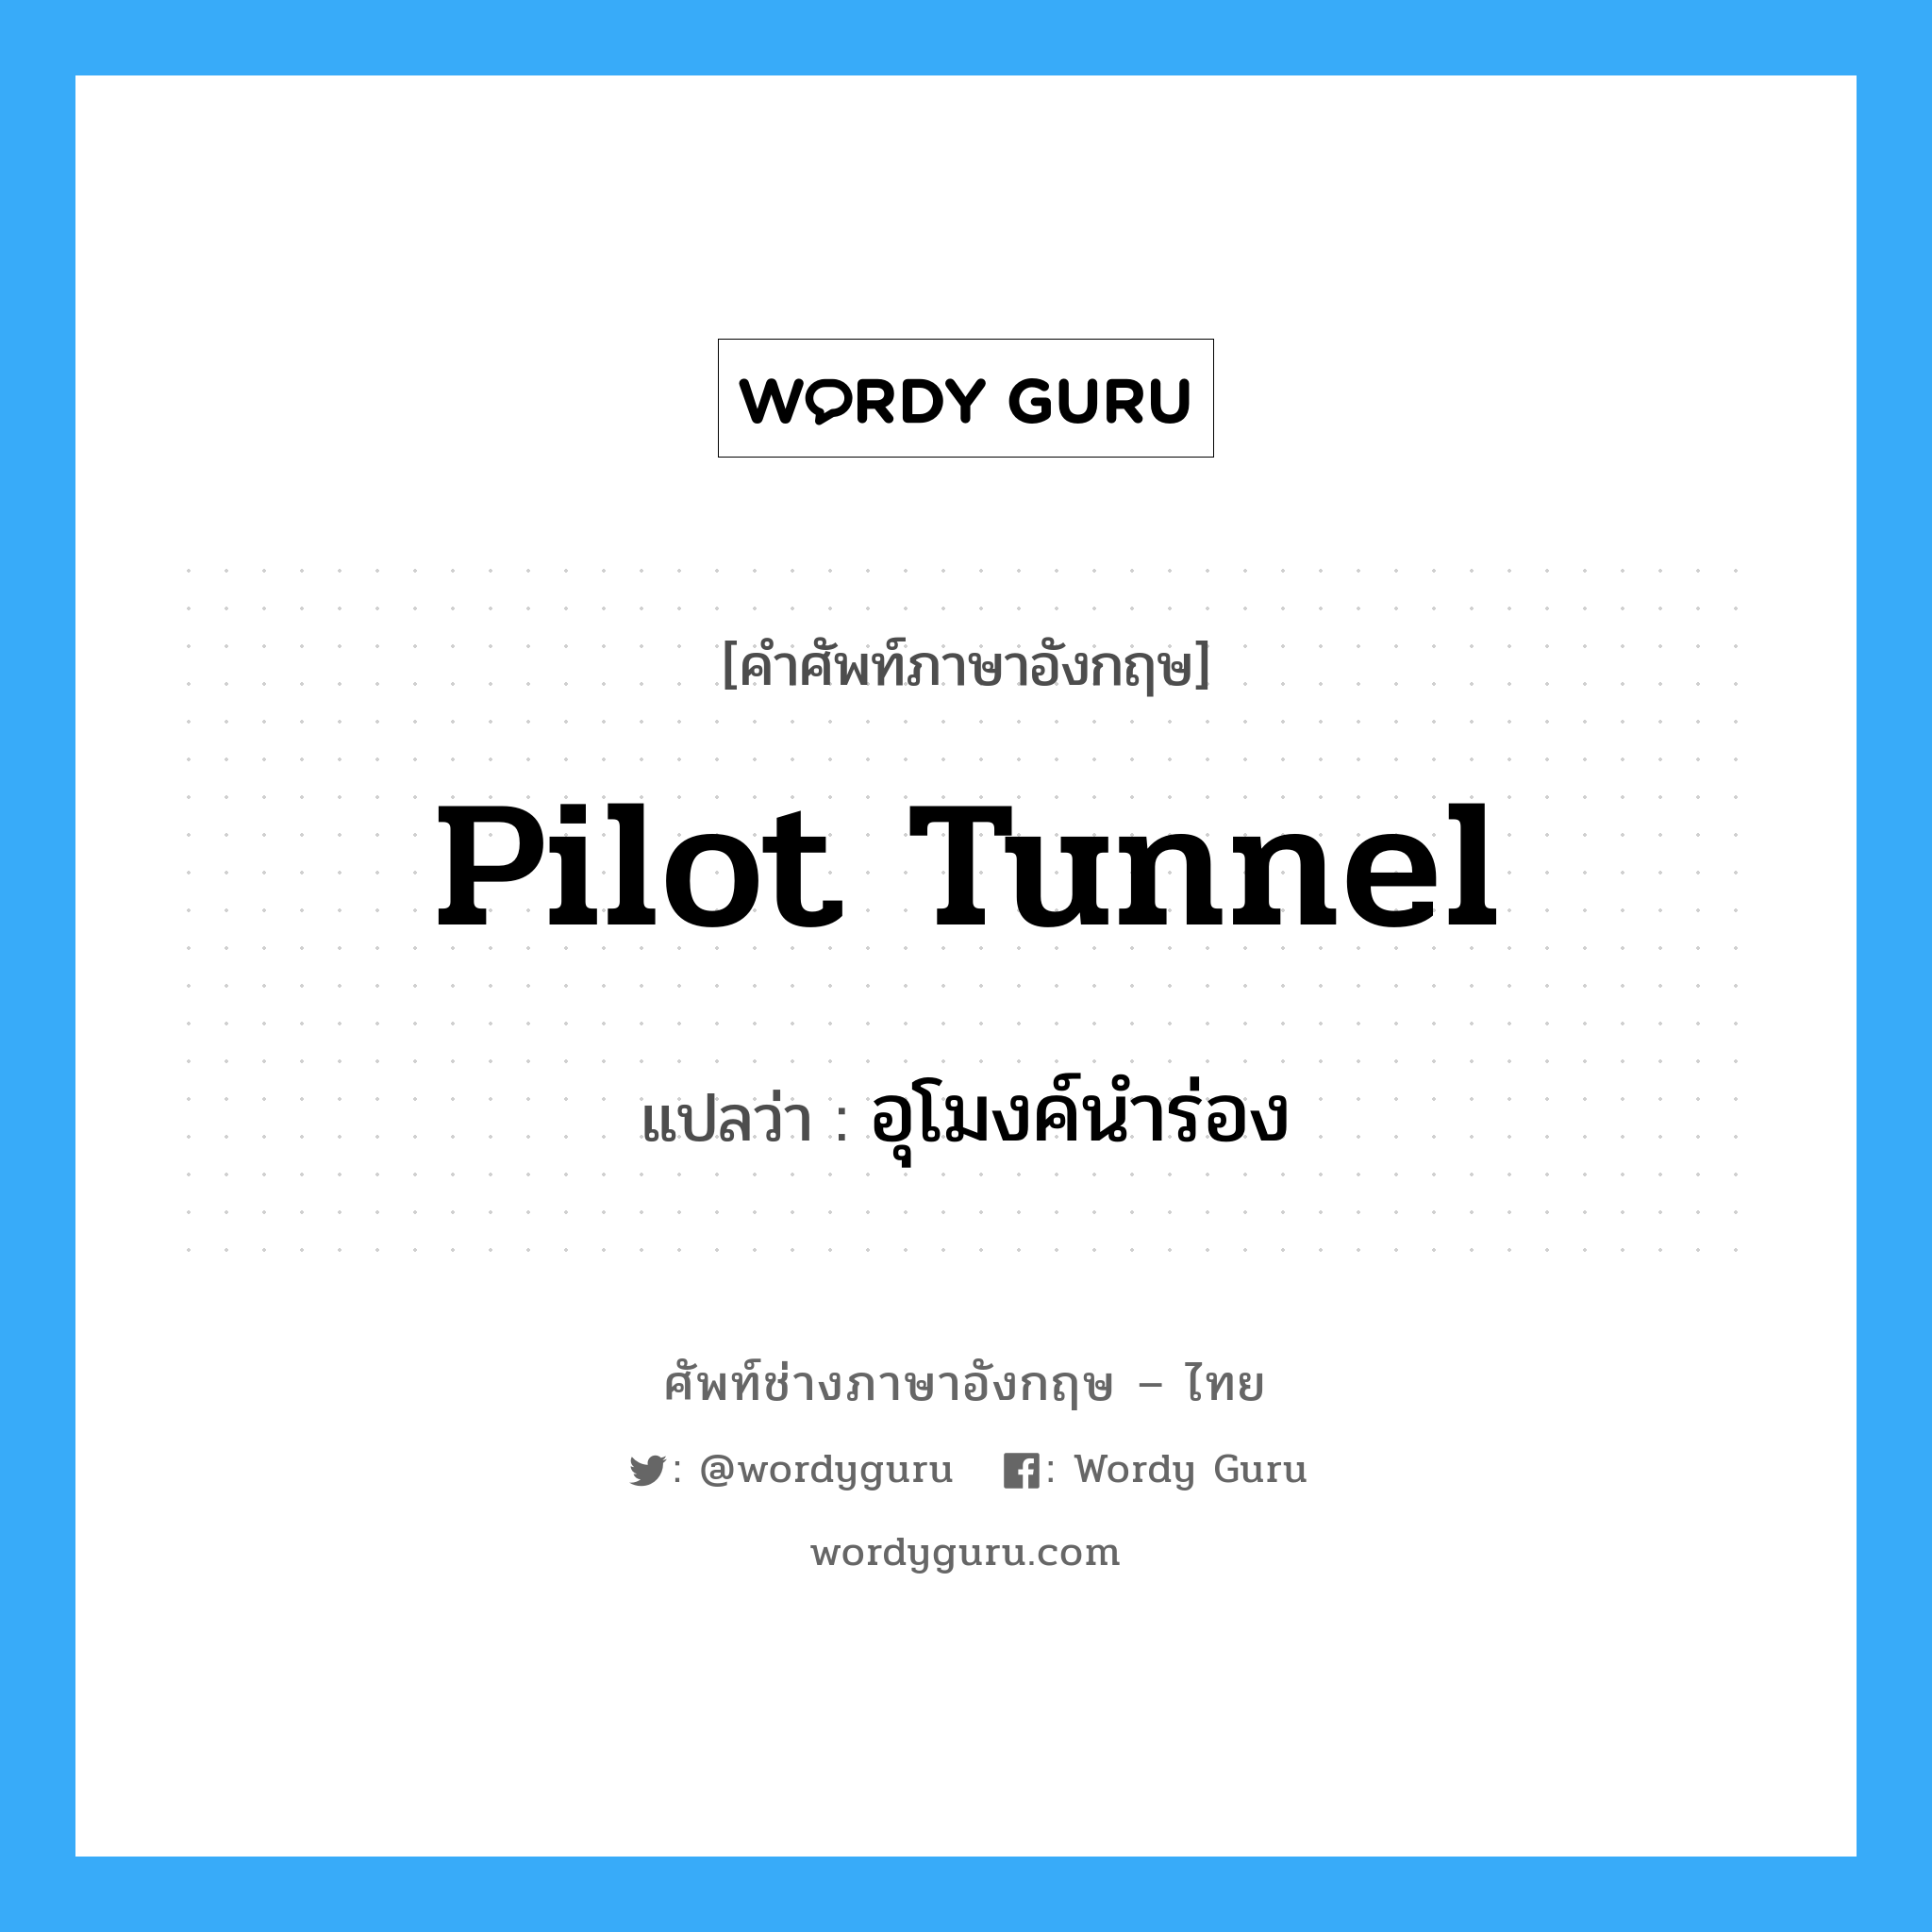 อุโมงค์นำร่อง ภาษาอังกฤษ?, คำศัพท์ช่างภาษาอังกฤษ - ไทย อุโมงค์นำร่อง คำศัพท์ภาษาอังกฤษ อุโมงค์นำร่อง แปลว่า pilot tunnel